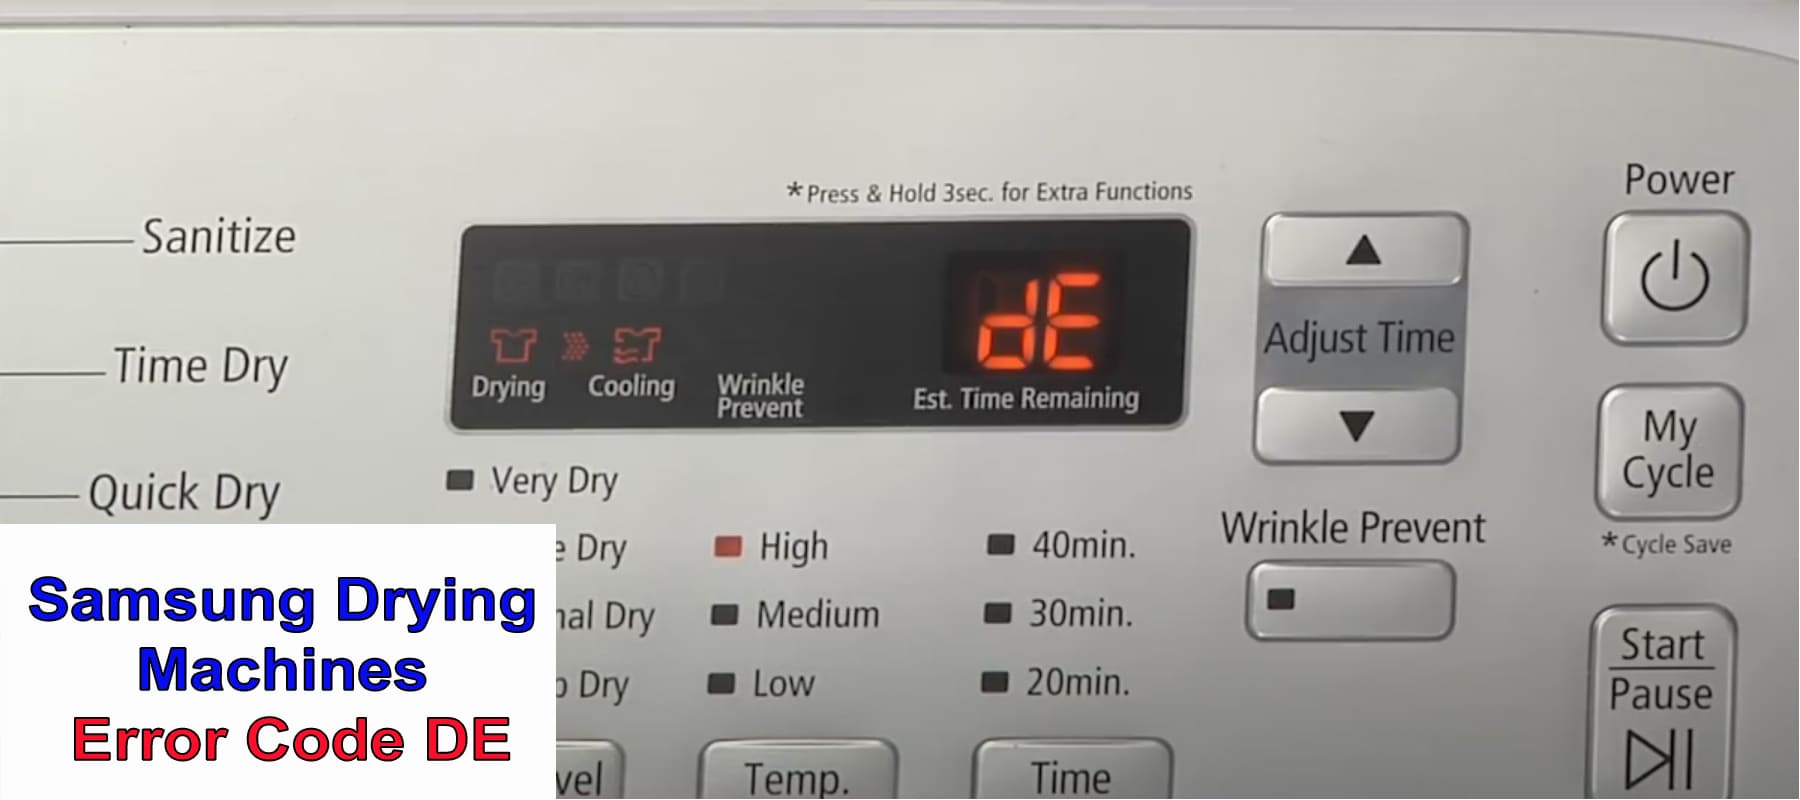 Samsung Drying Machines Error Code DE